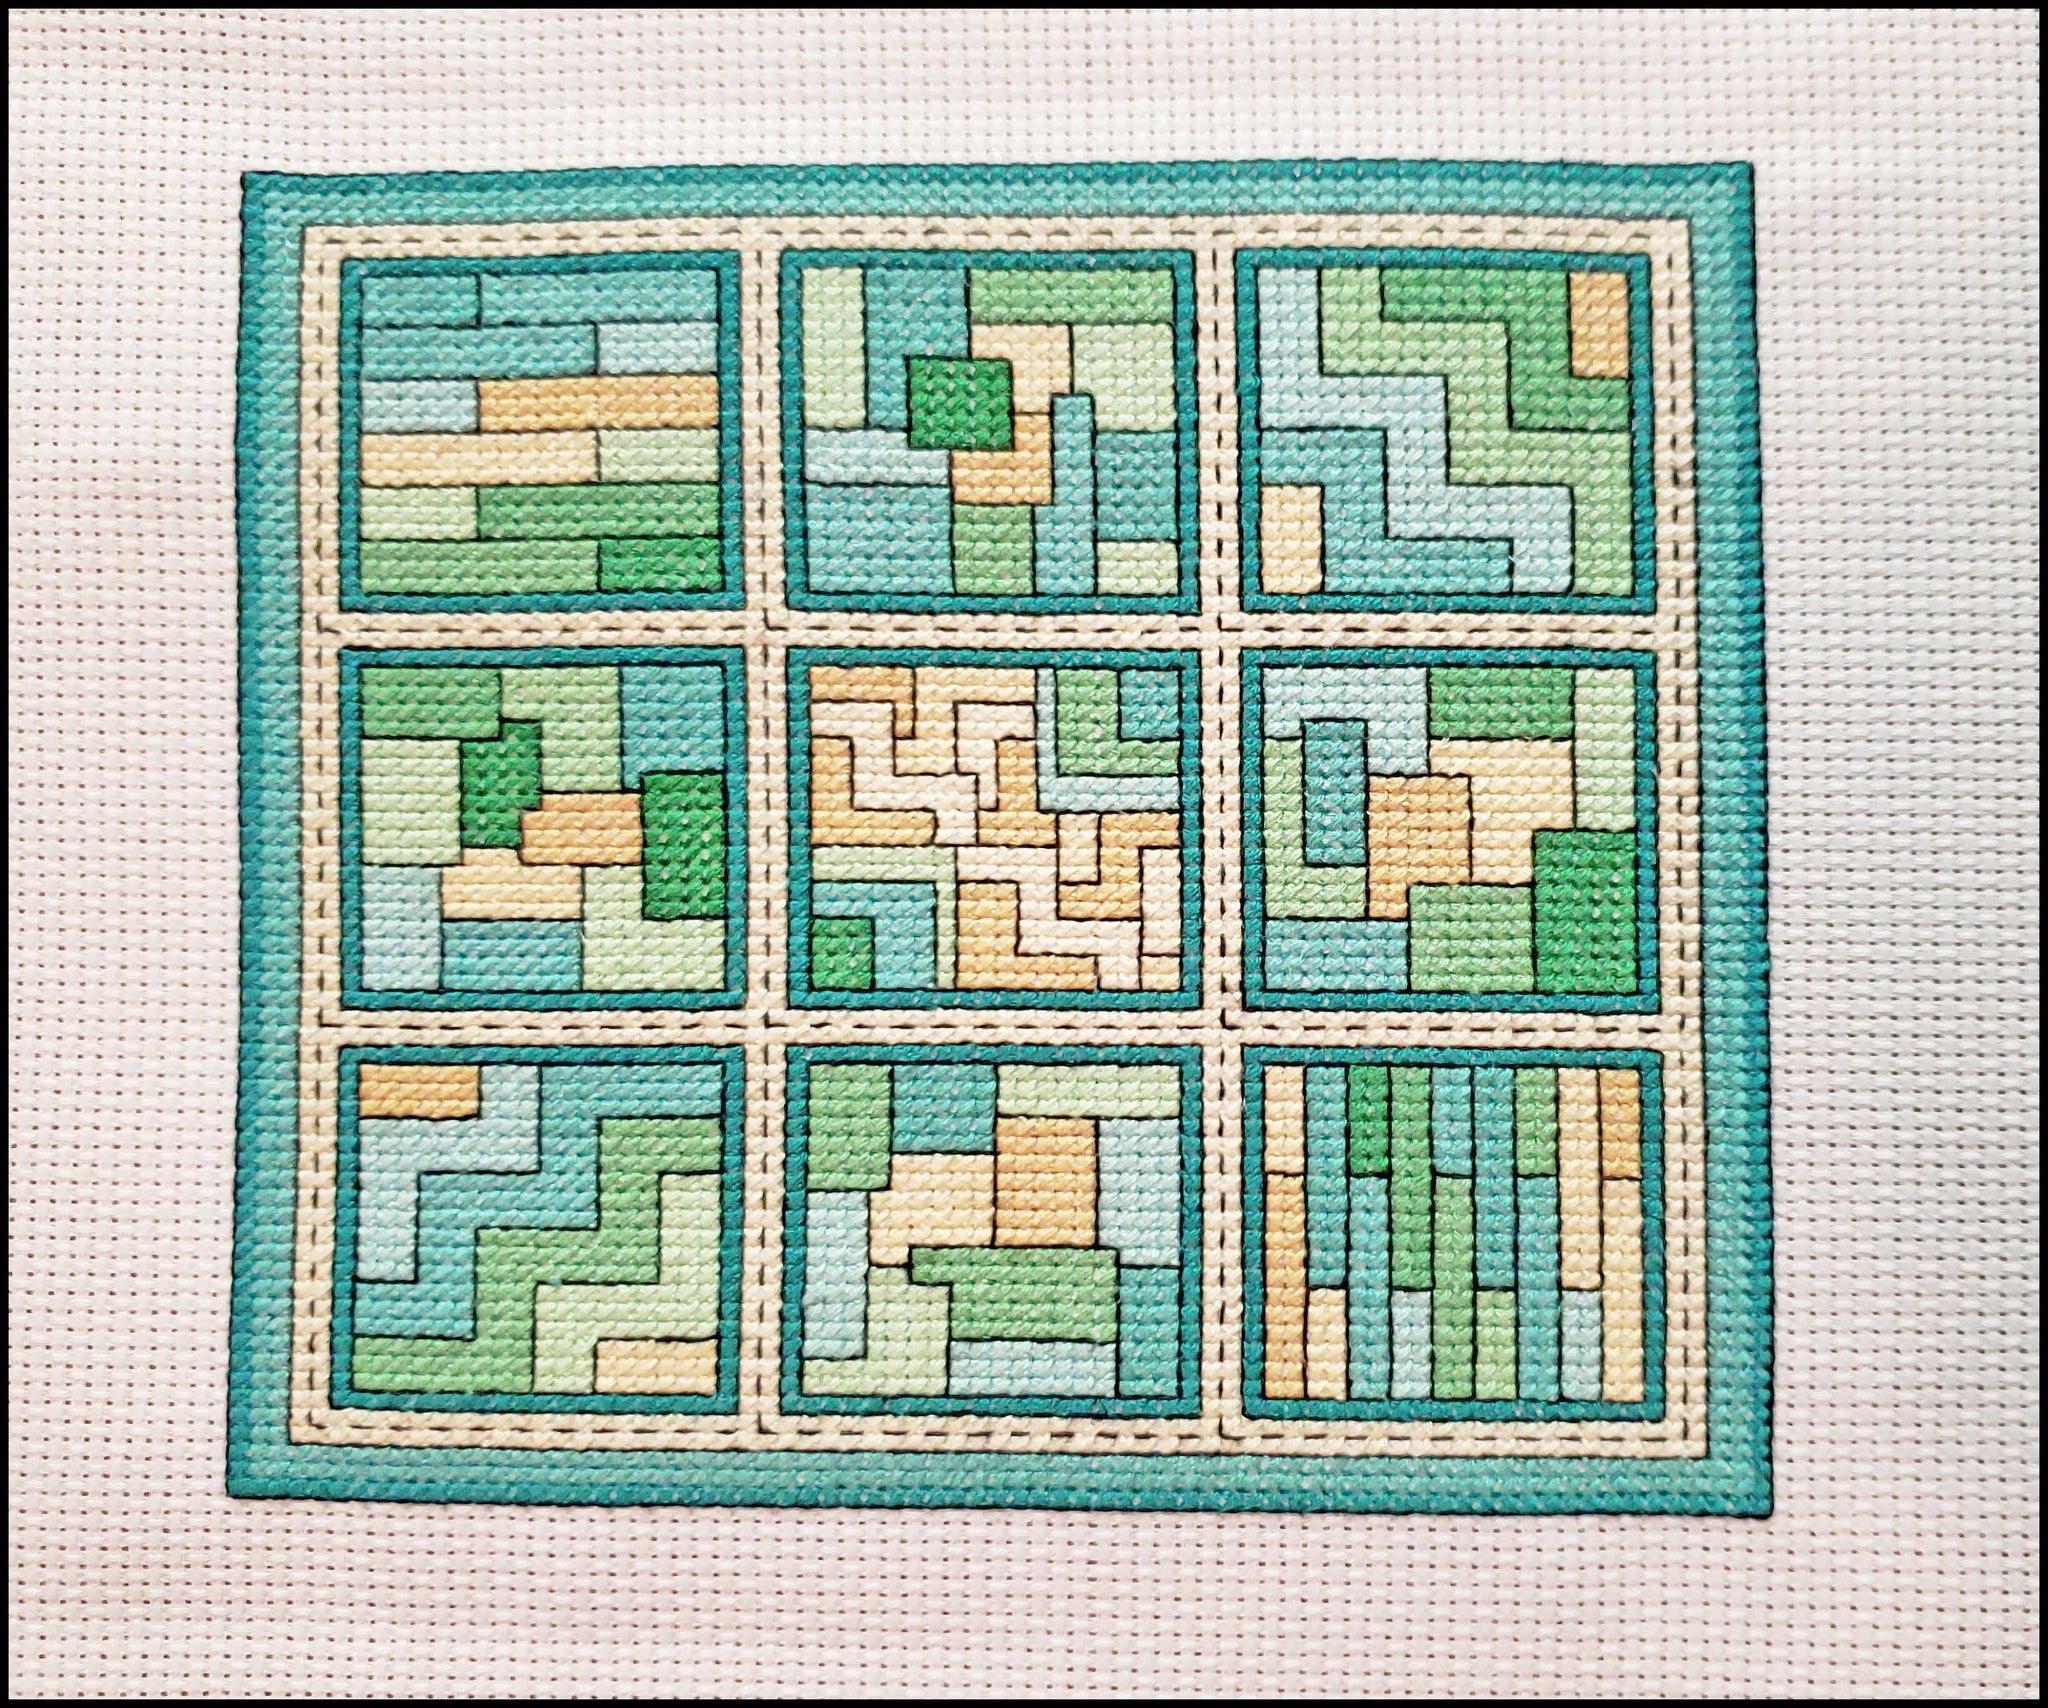 Aquatic Dreams / Quilt Blocks 13 - Cross Stitch Pattern